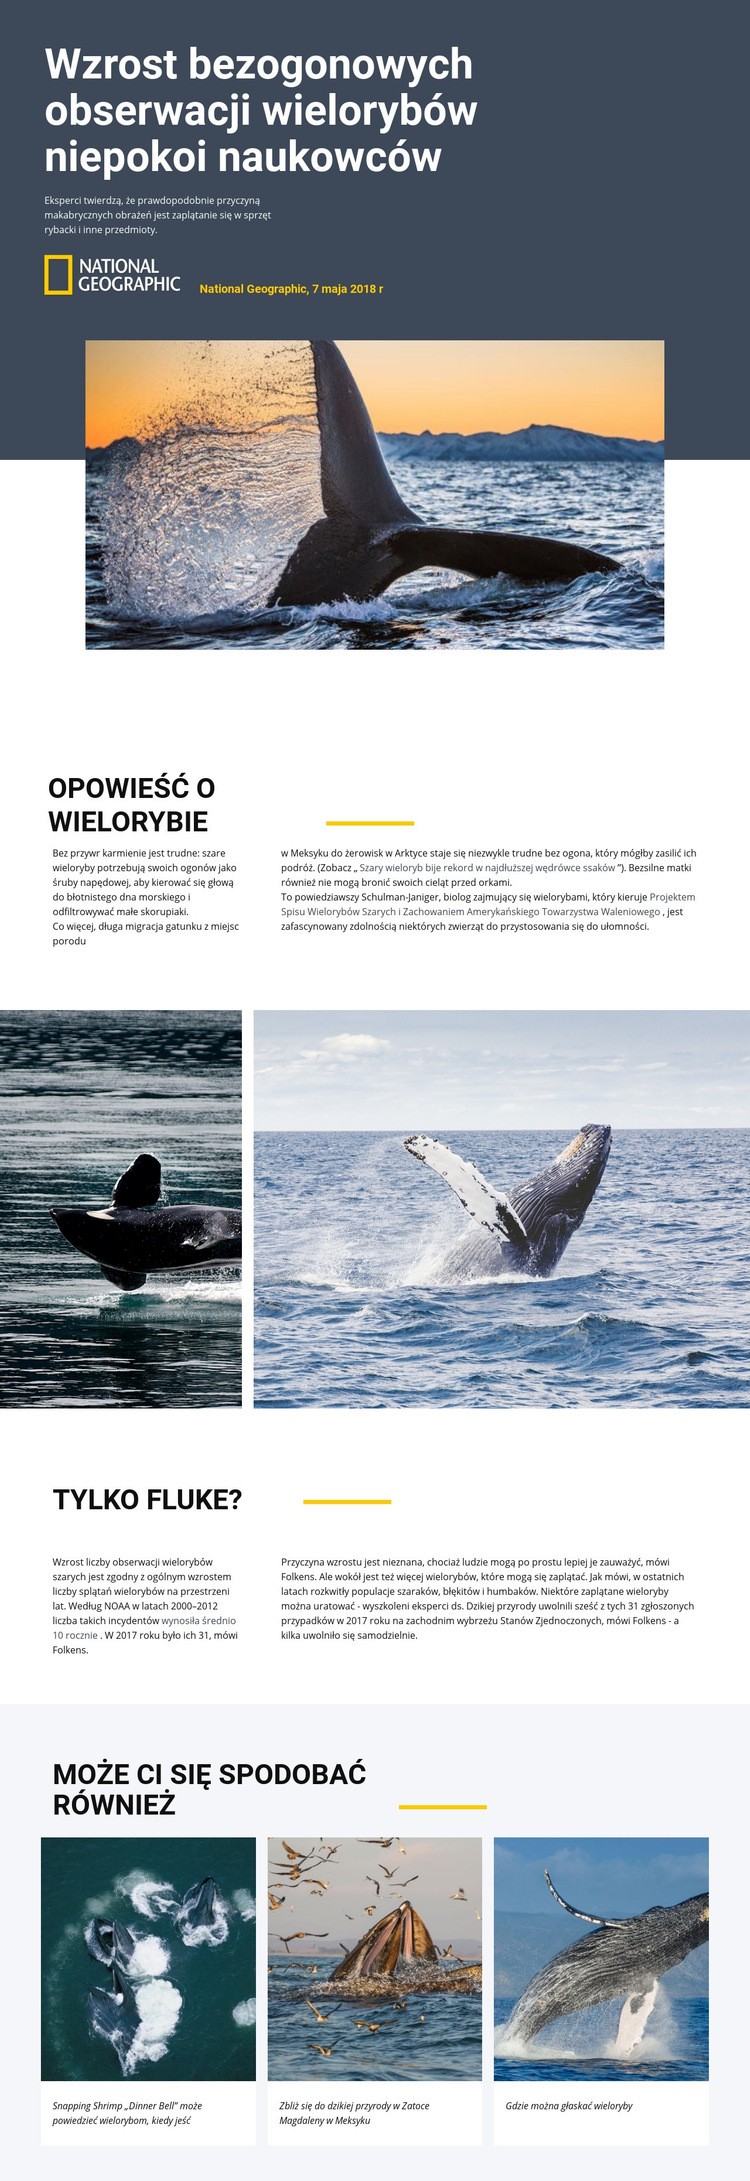 Centrum obserwacji wielorybów Szablony do tworzenia witryn internetowych